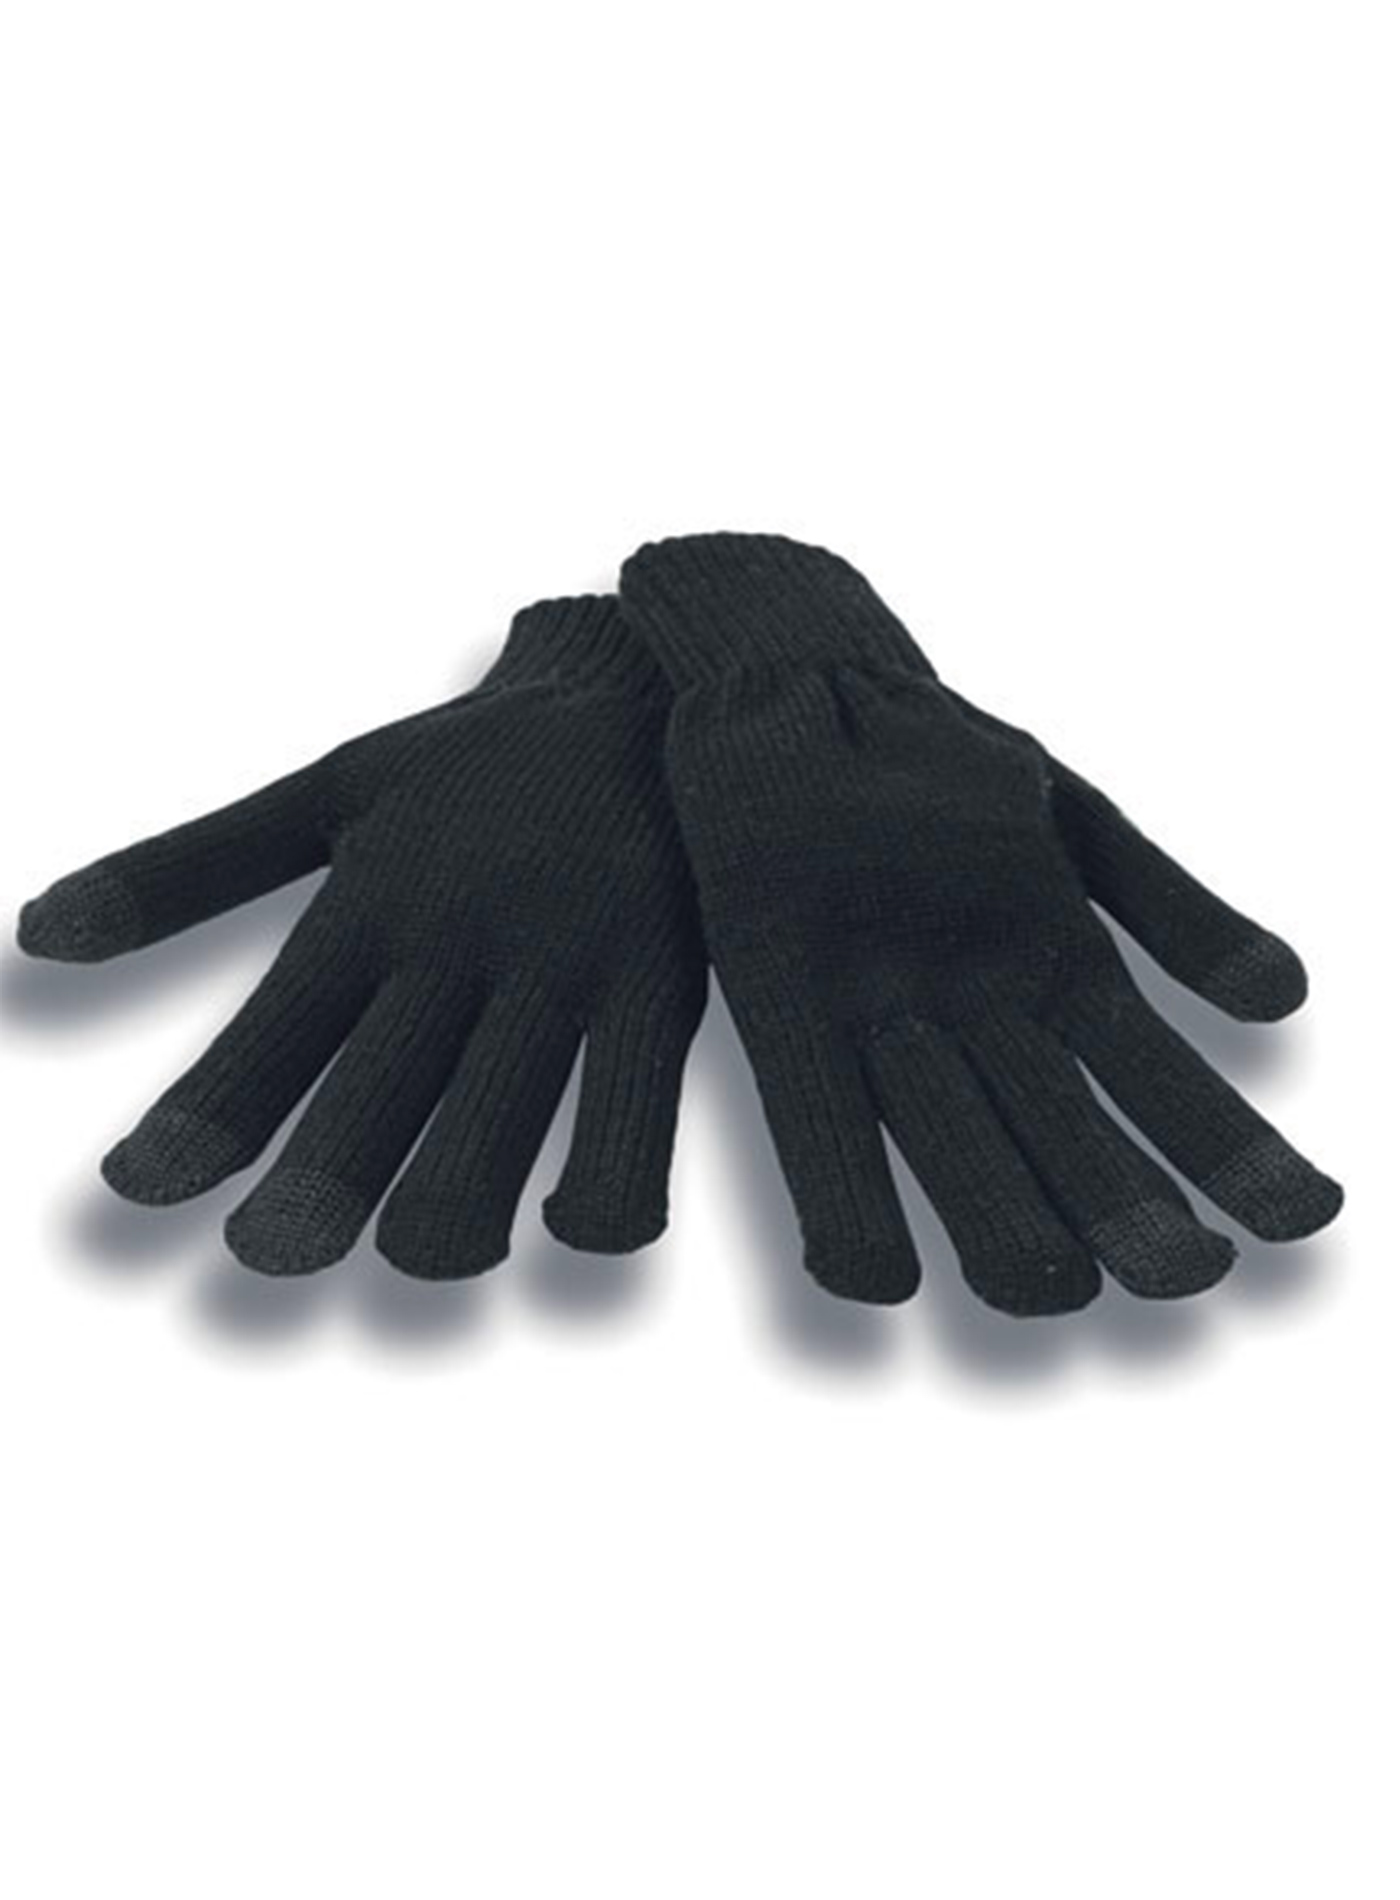 Unisex zimní dotykové rukavice Atlantis Touch - černá L/XL